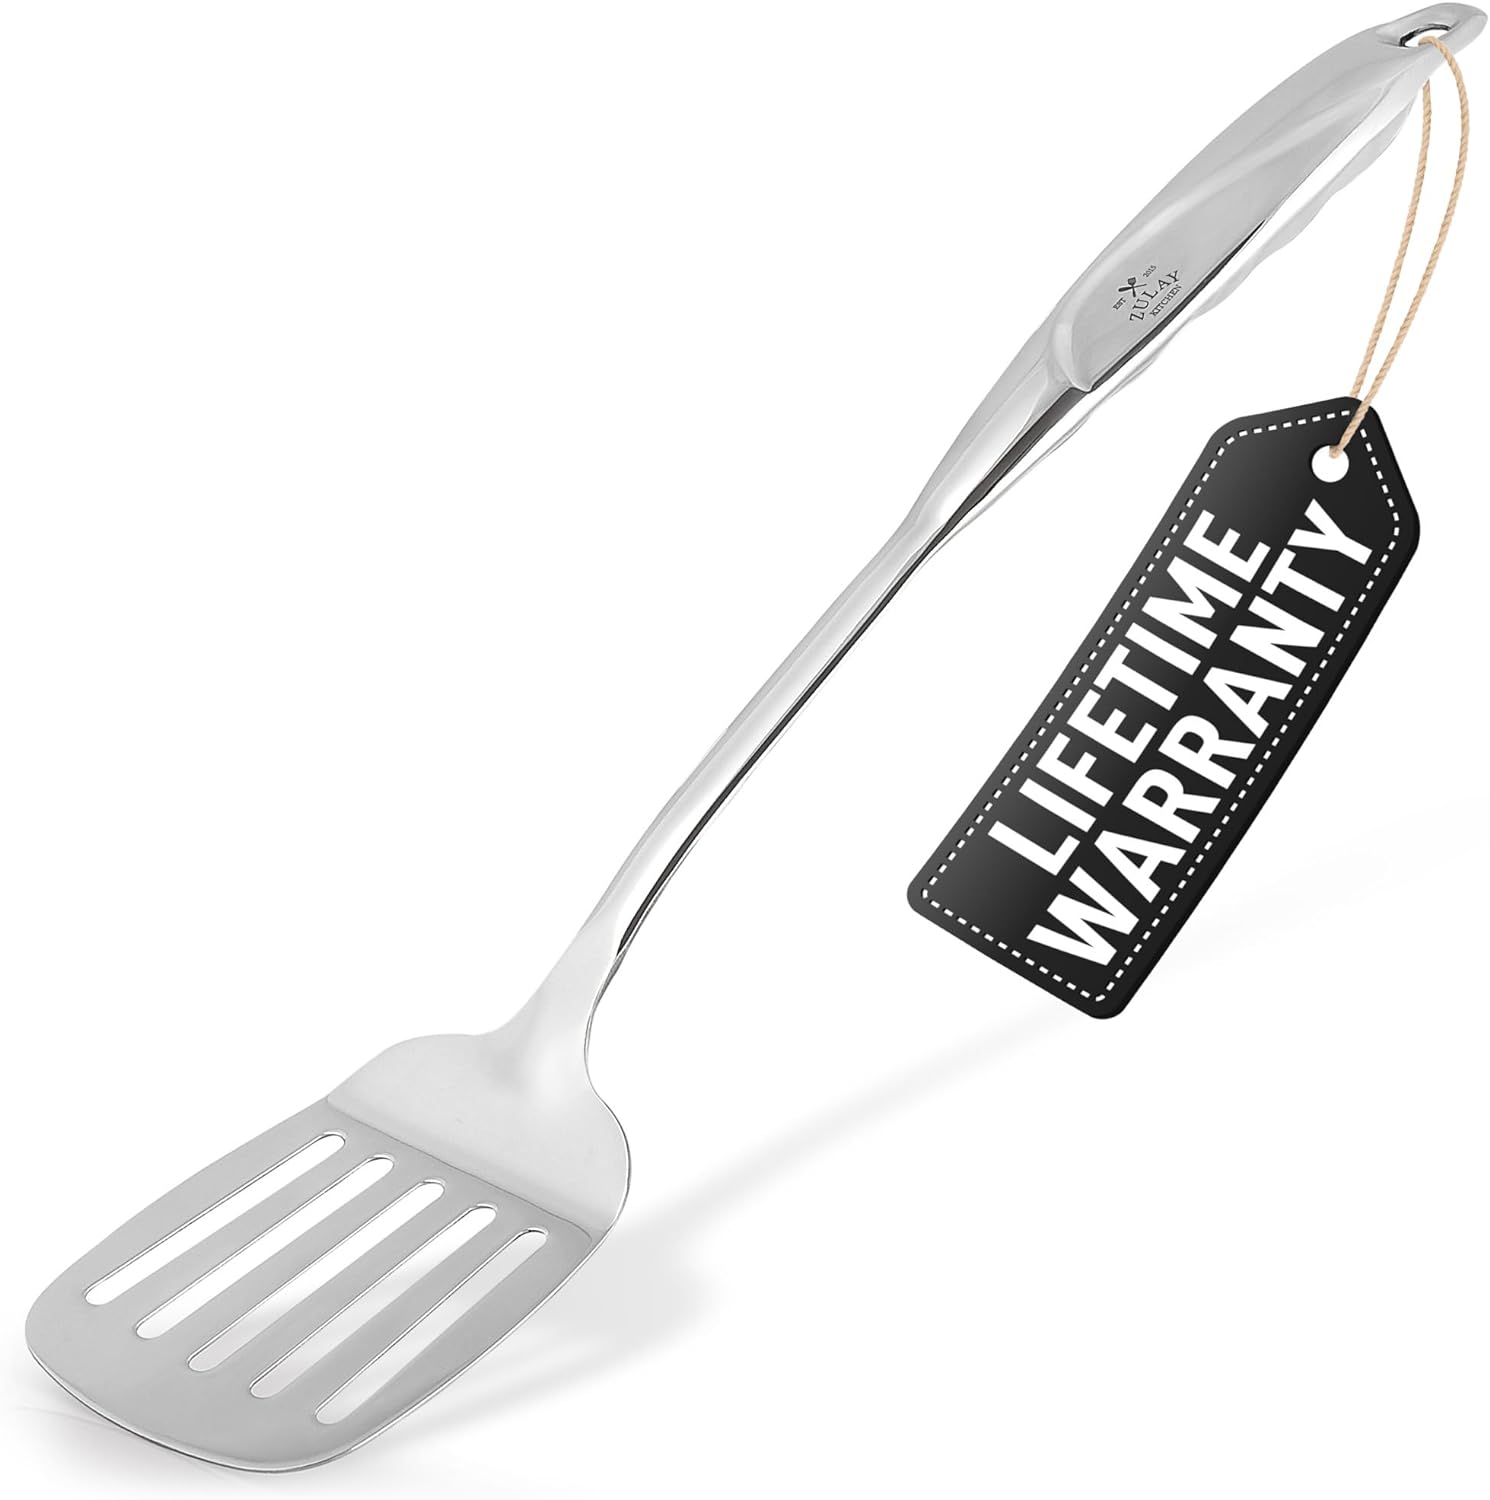 slotted spatula by Zulay Kitchen